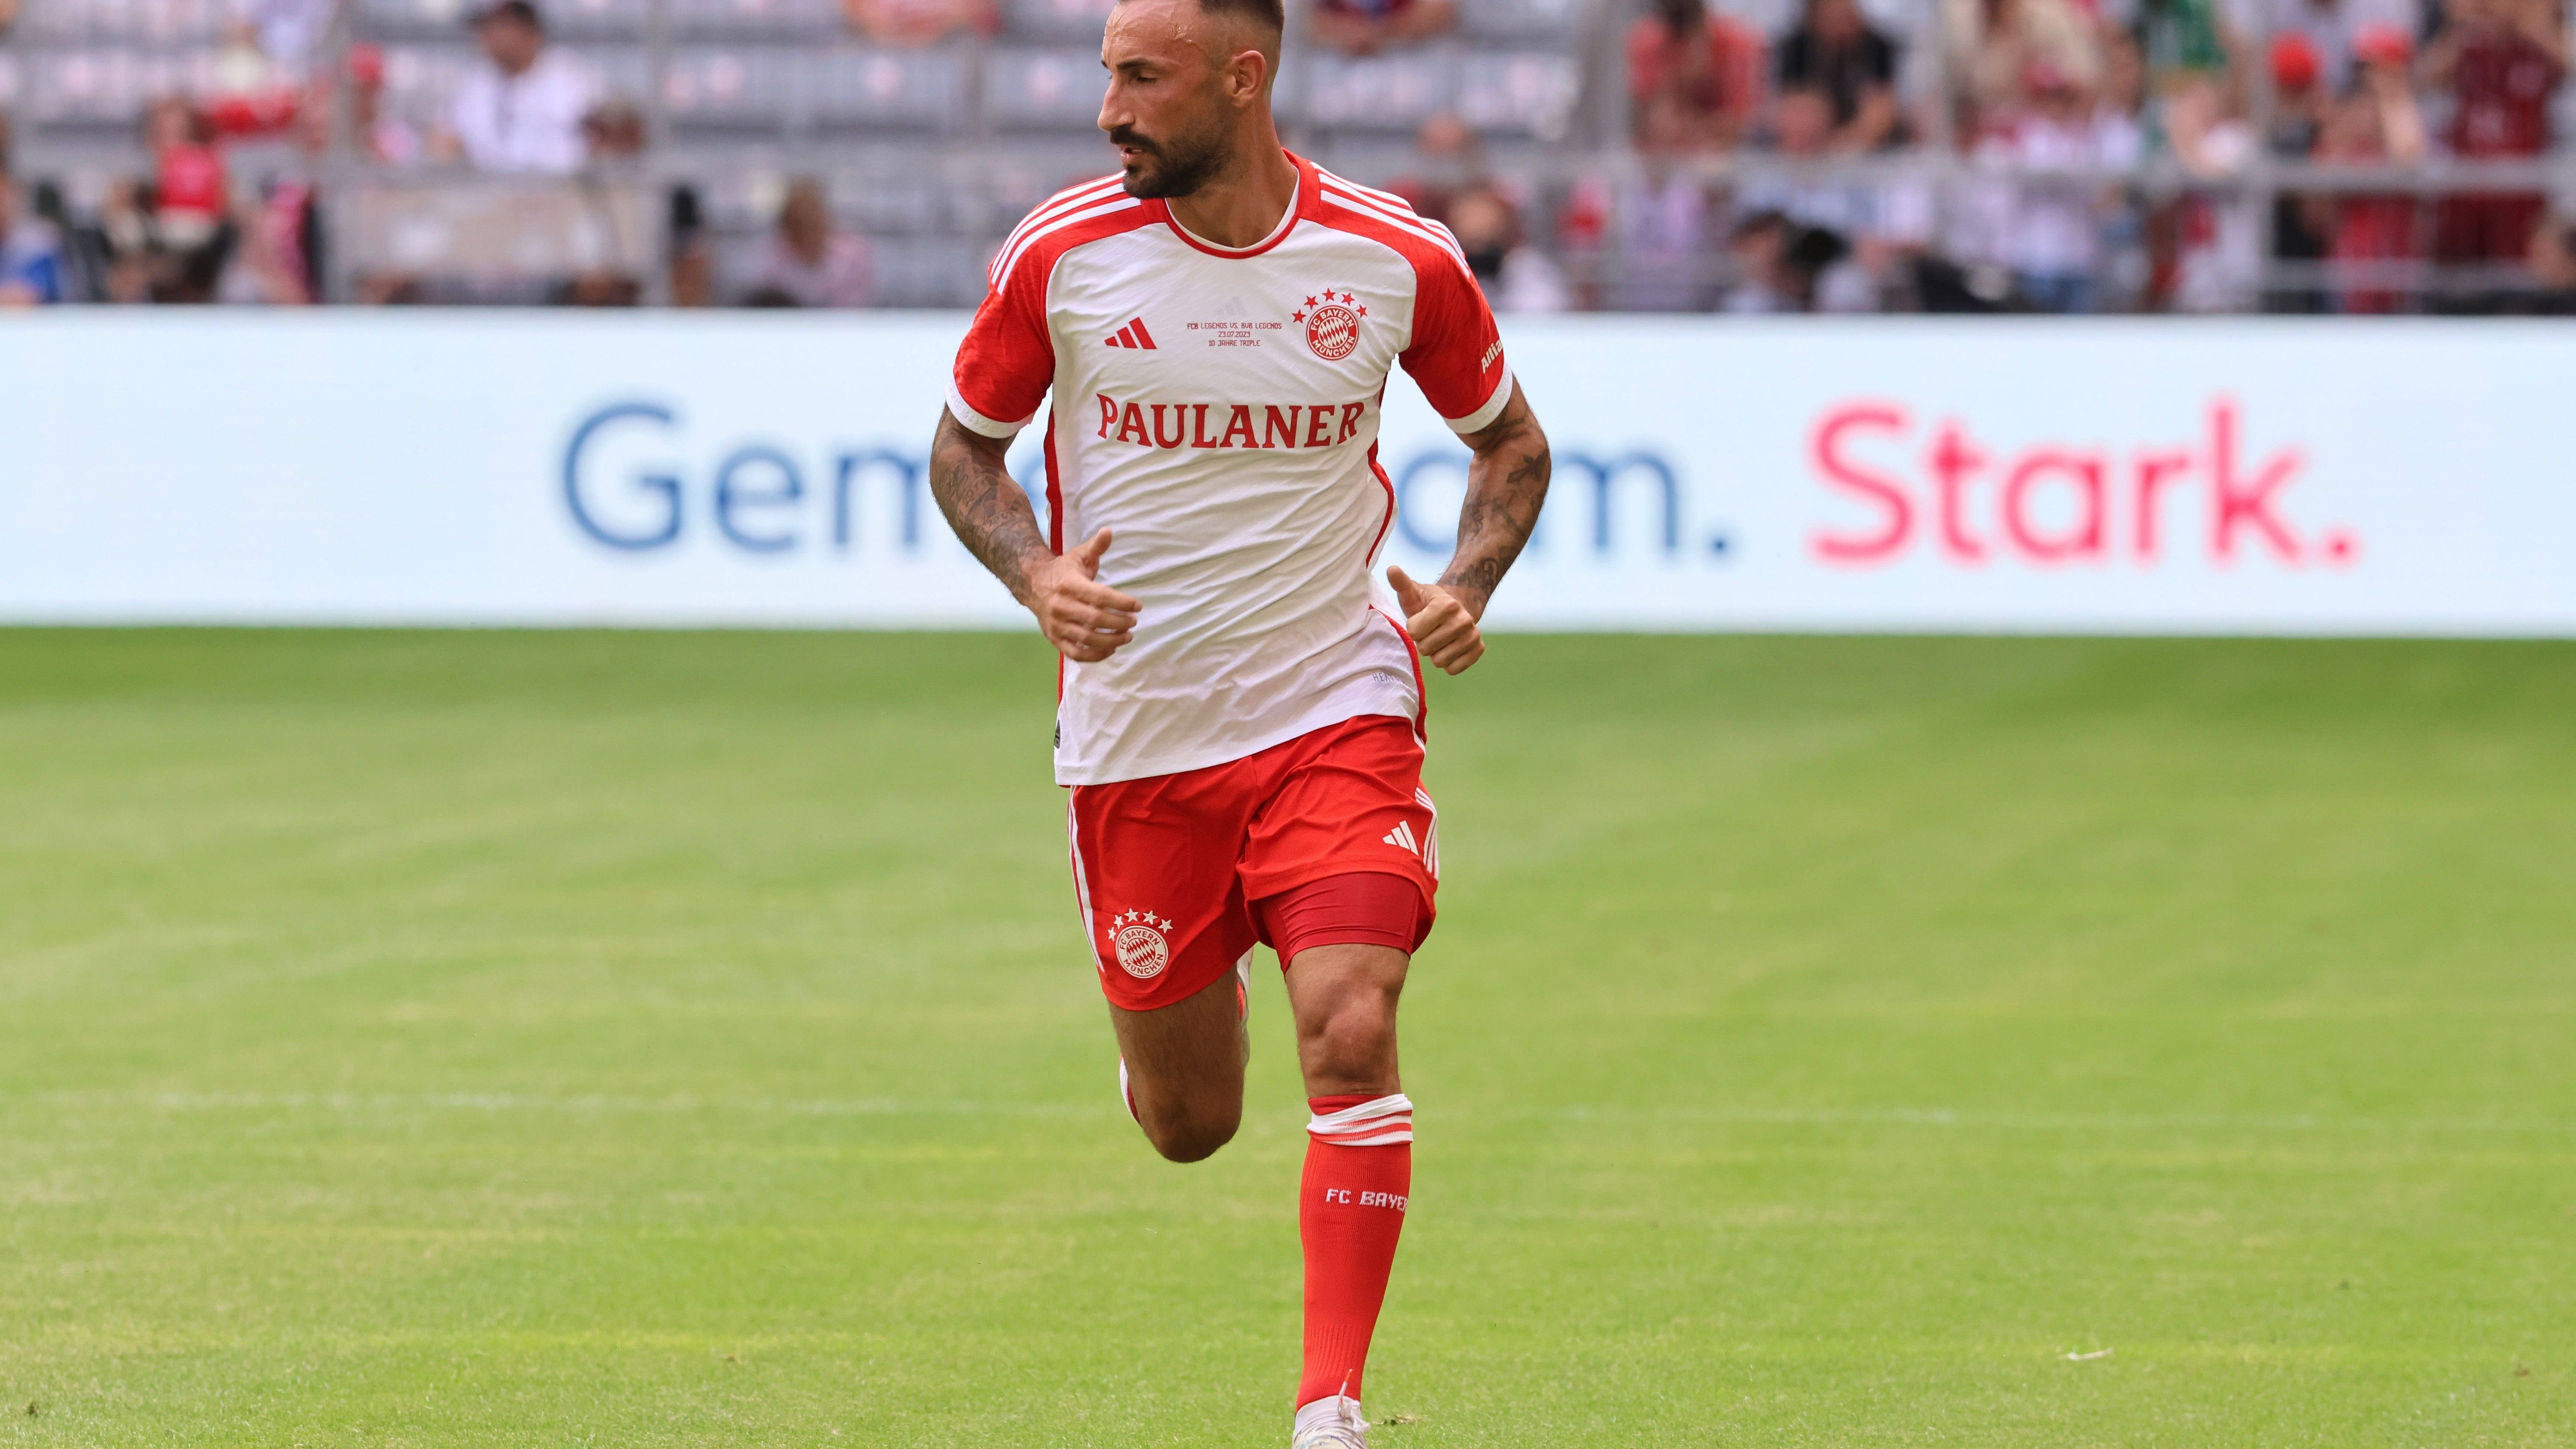 <strong>Diego Contento <br></strong> Diego Contento gewann im Jahre 2013 mit dem FC Bayern München die Champions League, spielte später in Frankreich für den FC Girondins Bordeaux, danach für Fortuna Düsseldorf und abschließend in der Saison 2020/2021 für den SV Sandhausen. Nun setzt der 33-Jährige seine Karriere beim FC Aschheim fort.